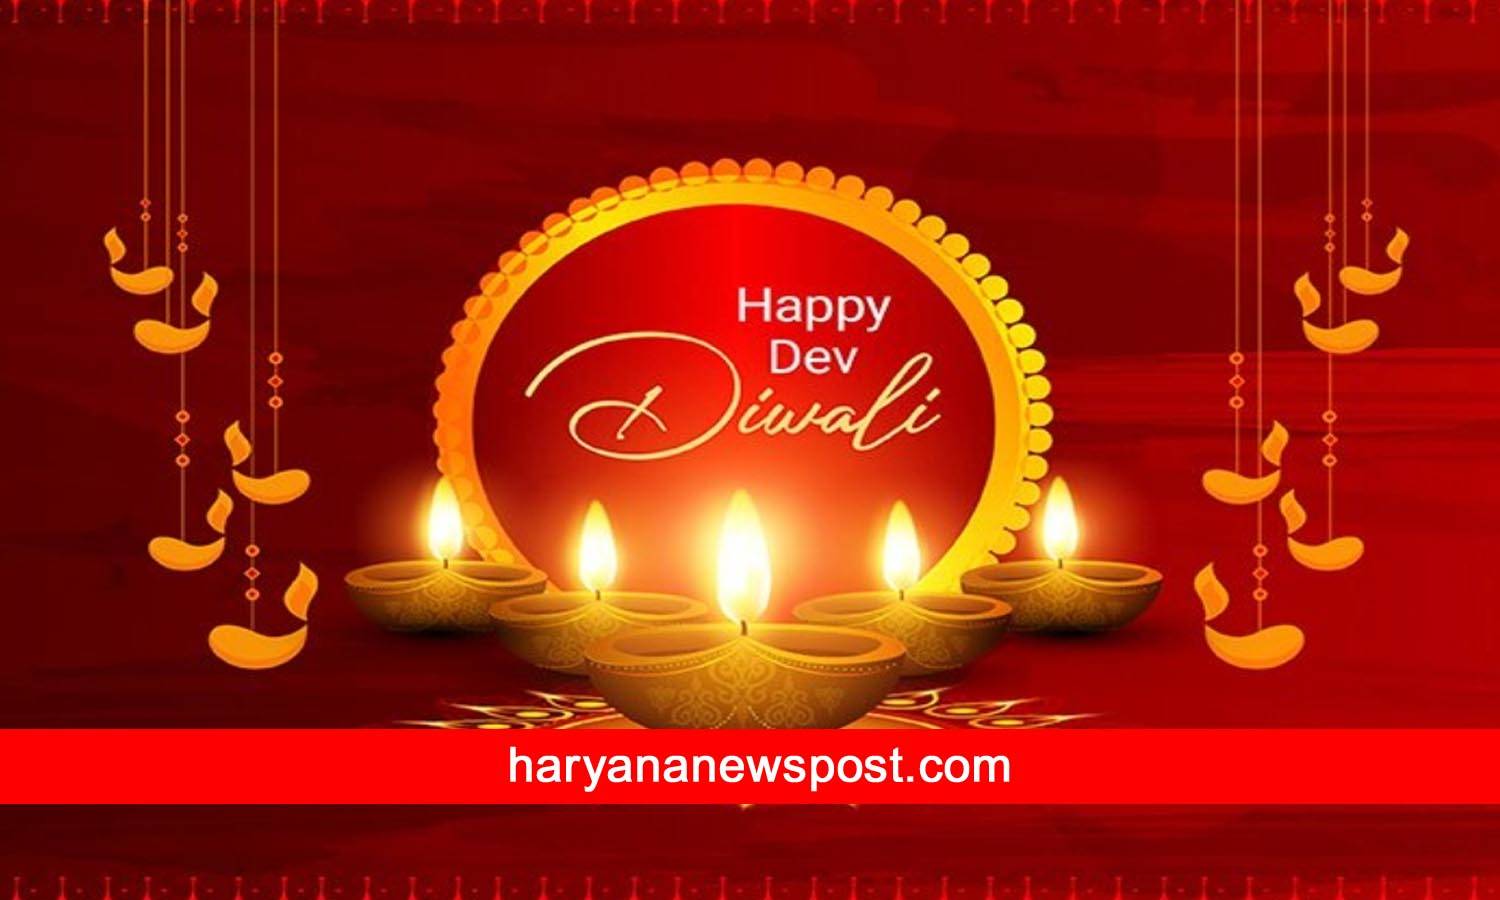 Happy Dev Diwali Wishes In Sanskrit